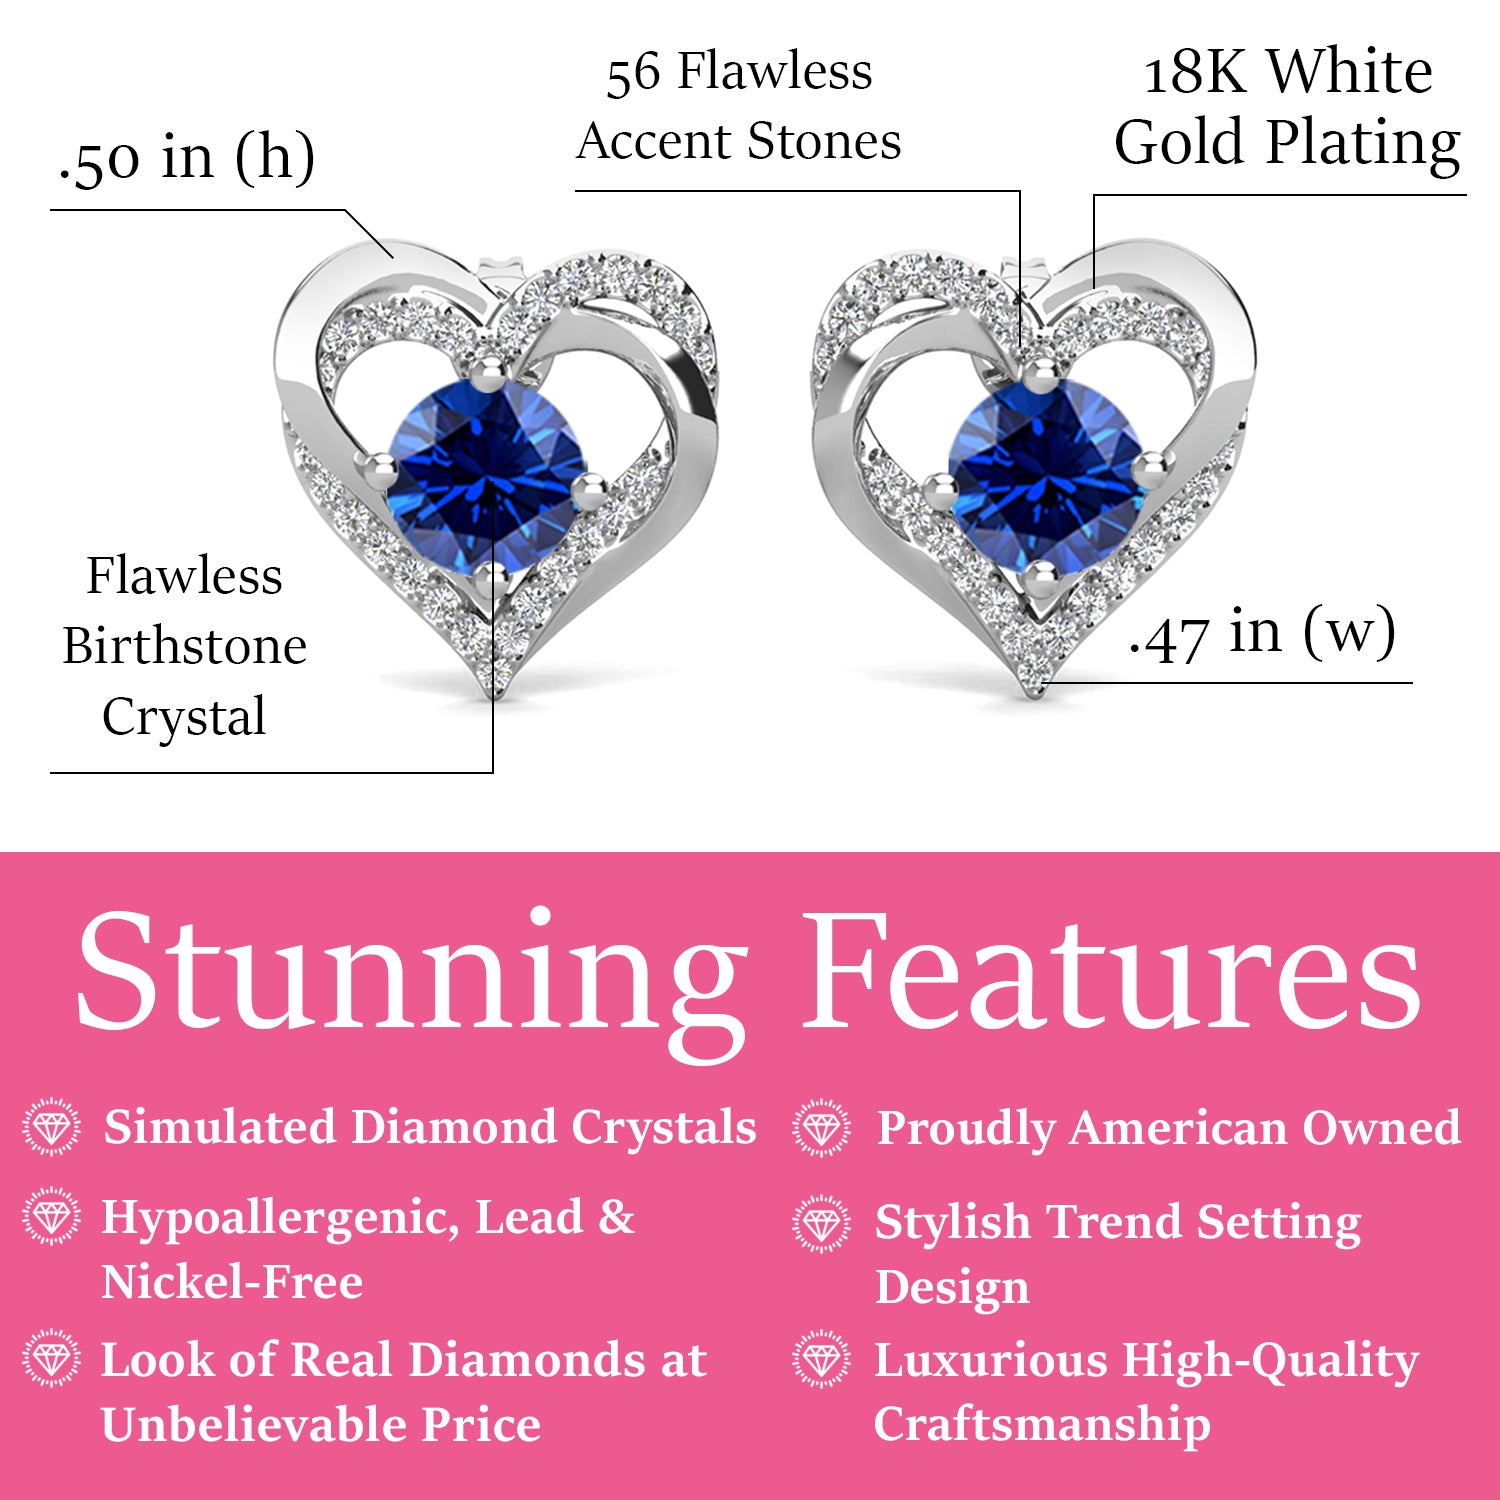 Forever September Birthstone Sapphire Earrings, 18k White Gold Plated Silver Double Heart Crystal Earrings